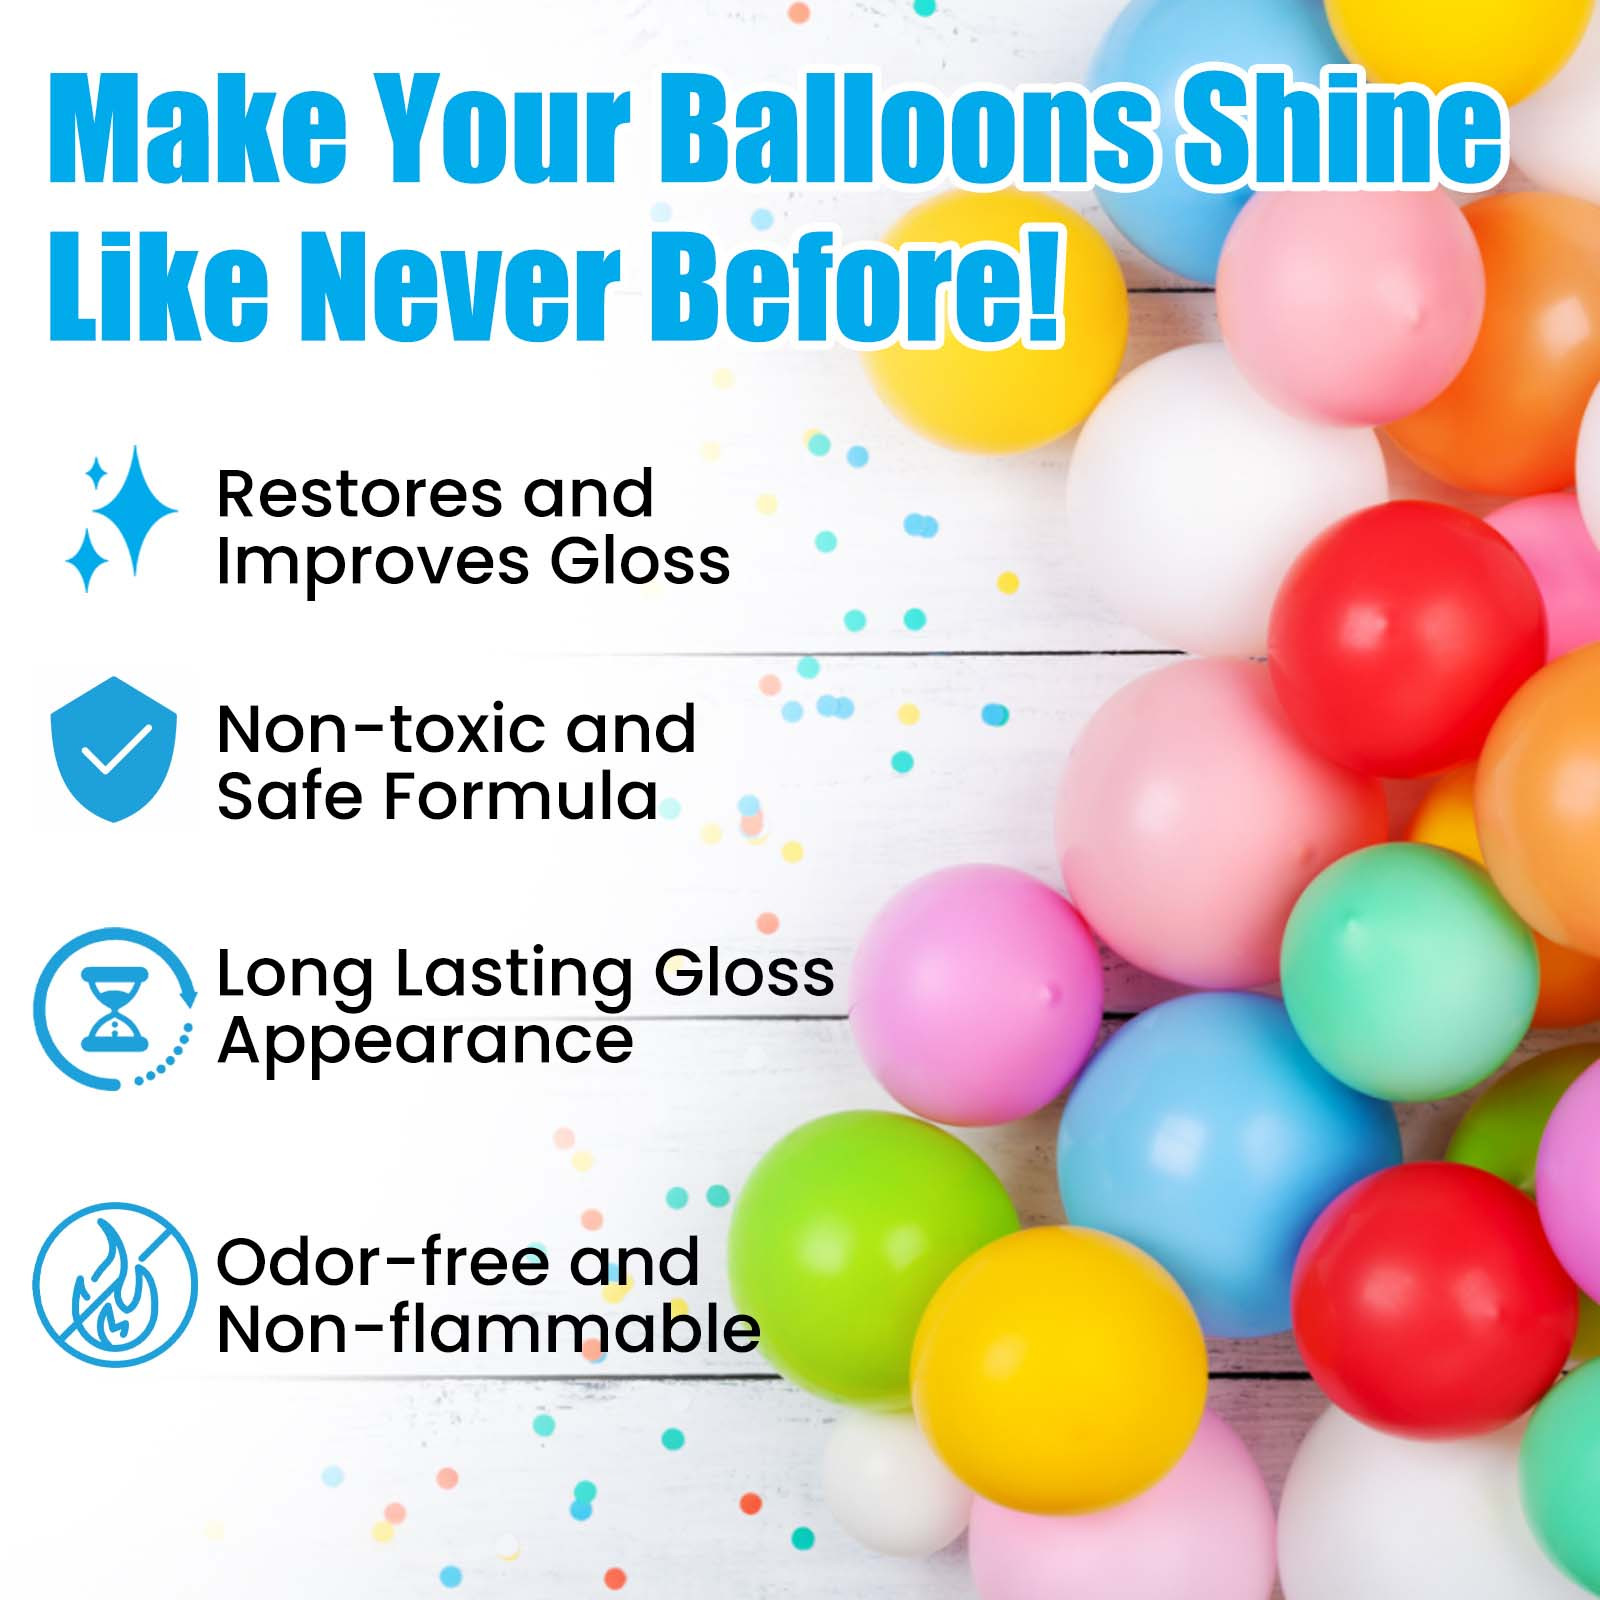 Balloon Shine Spray, 3.3Oz Balloon Shiny Spray for Latex Balloons